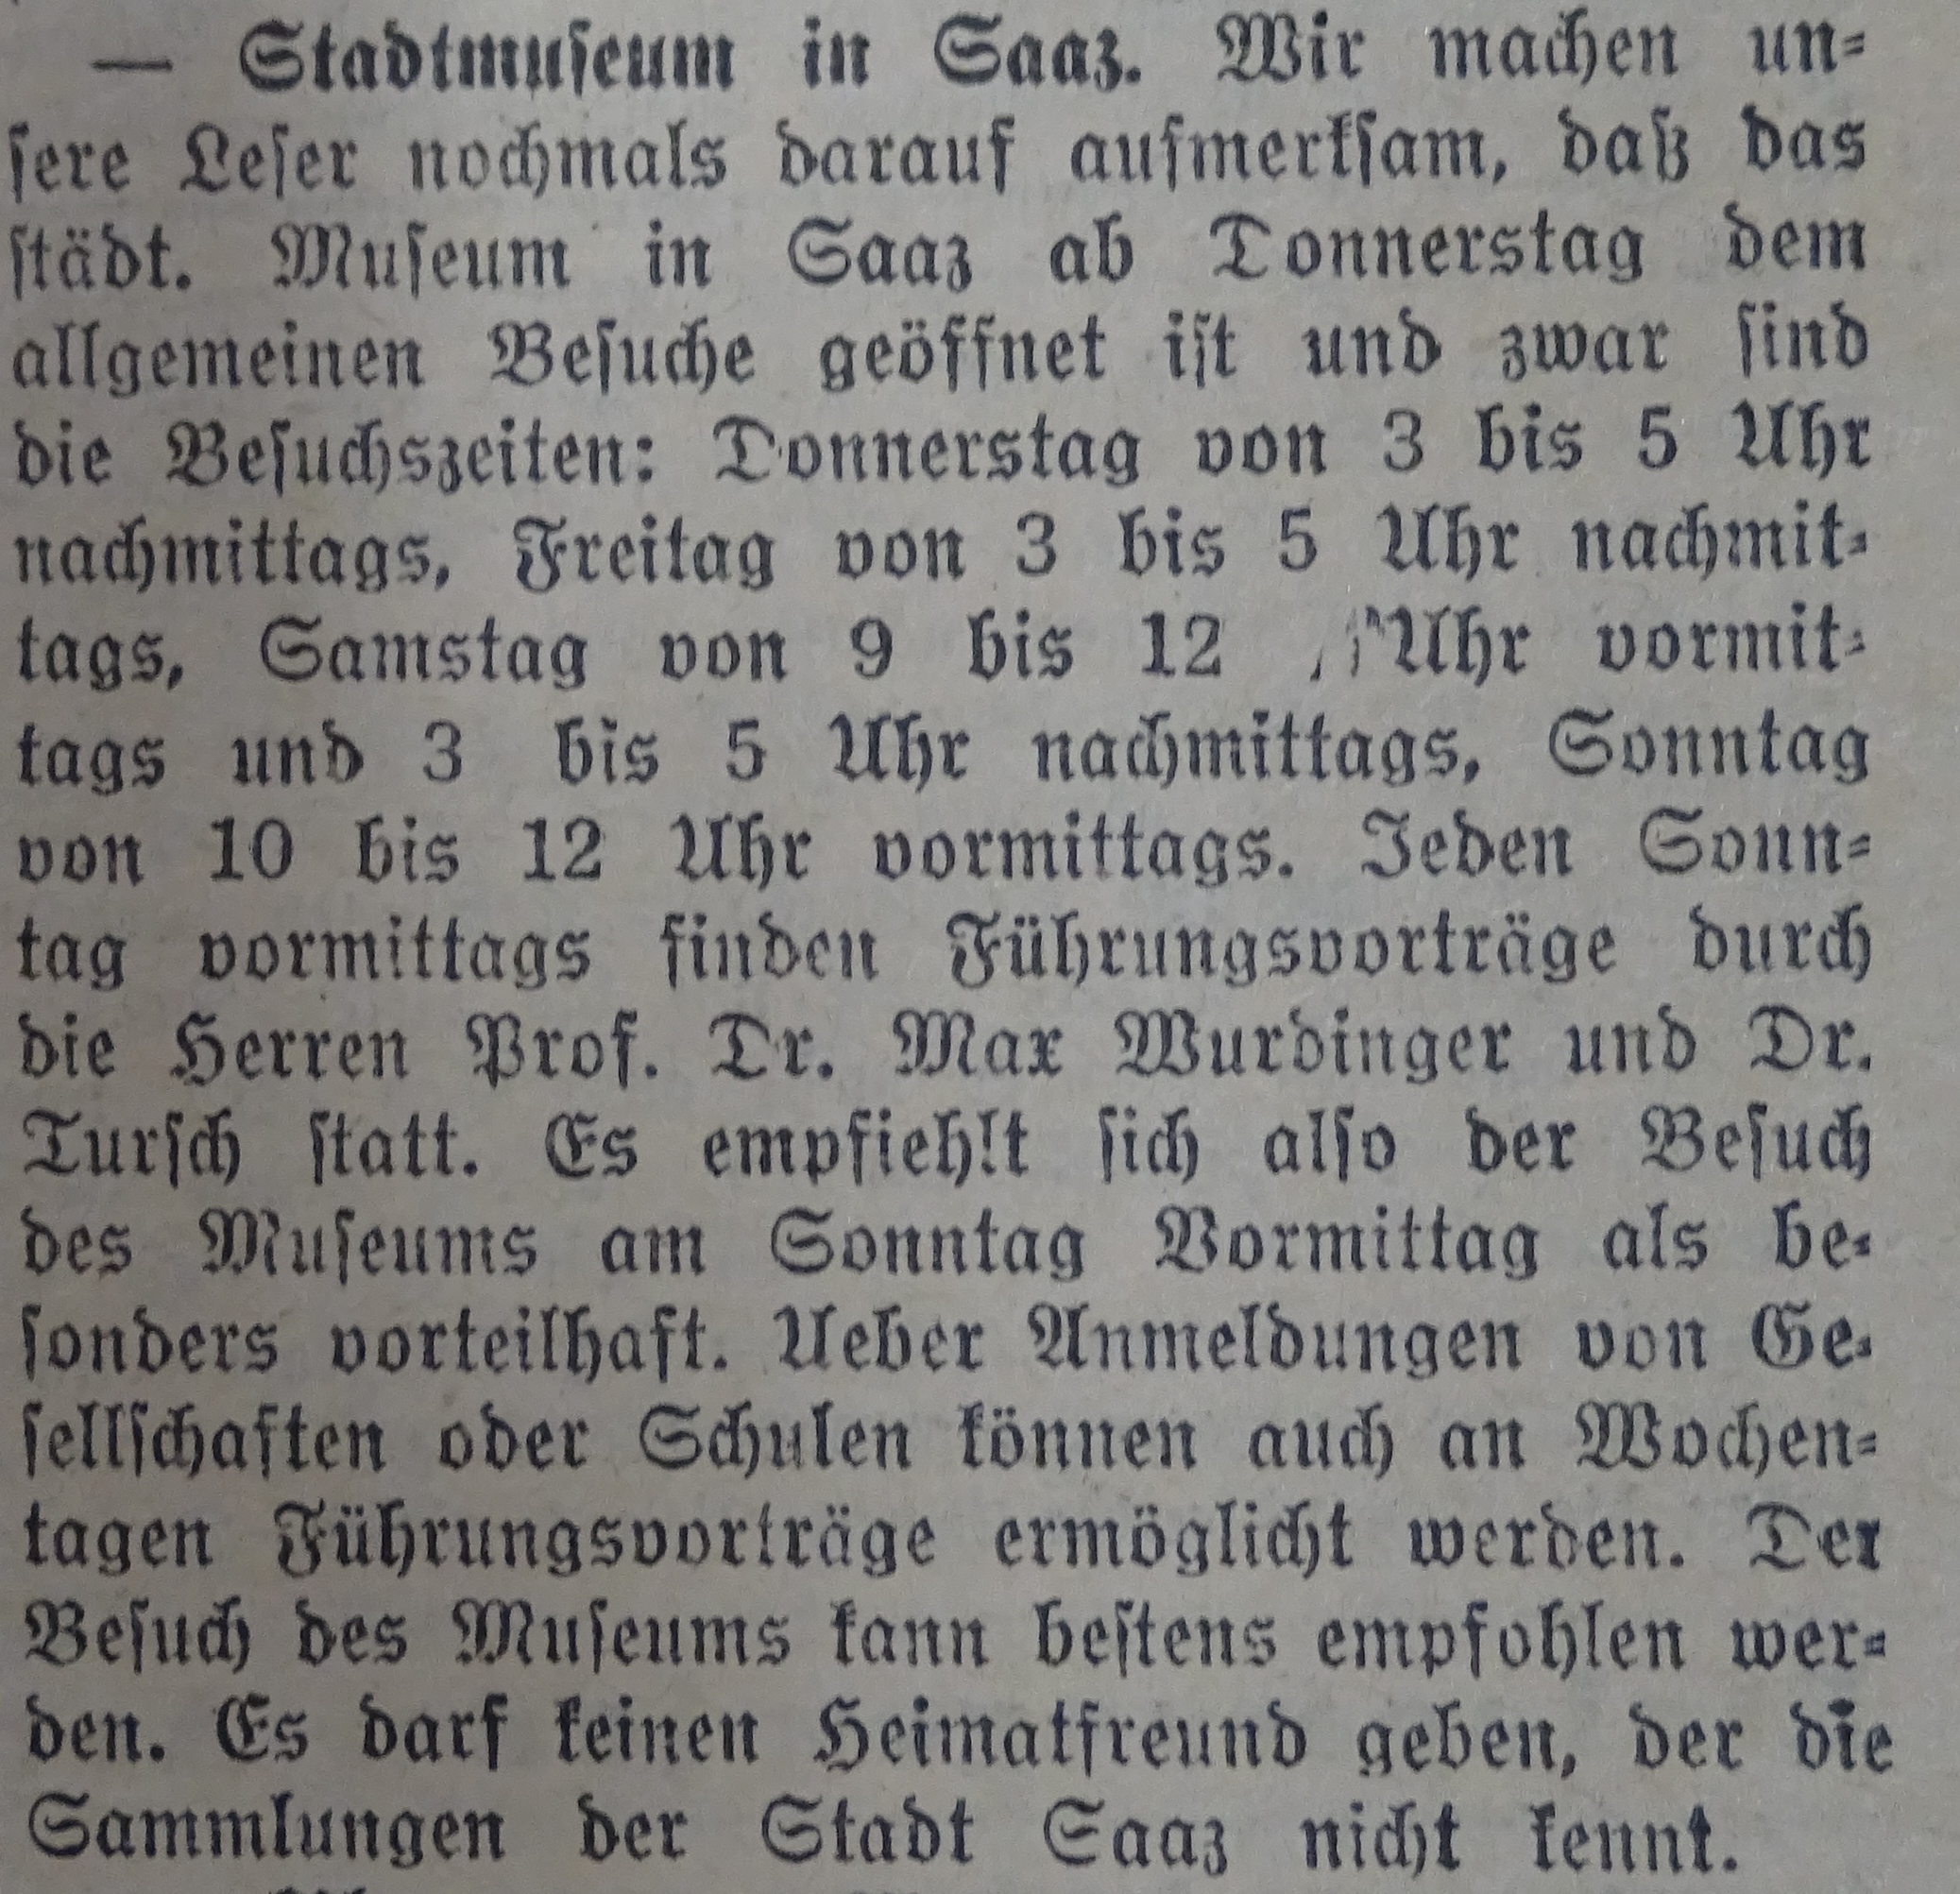 Pozvánka do nových expozic městského německého muzea z noviny Saazer Anzeiger 11.5.1930